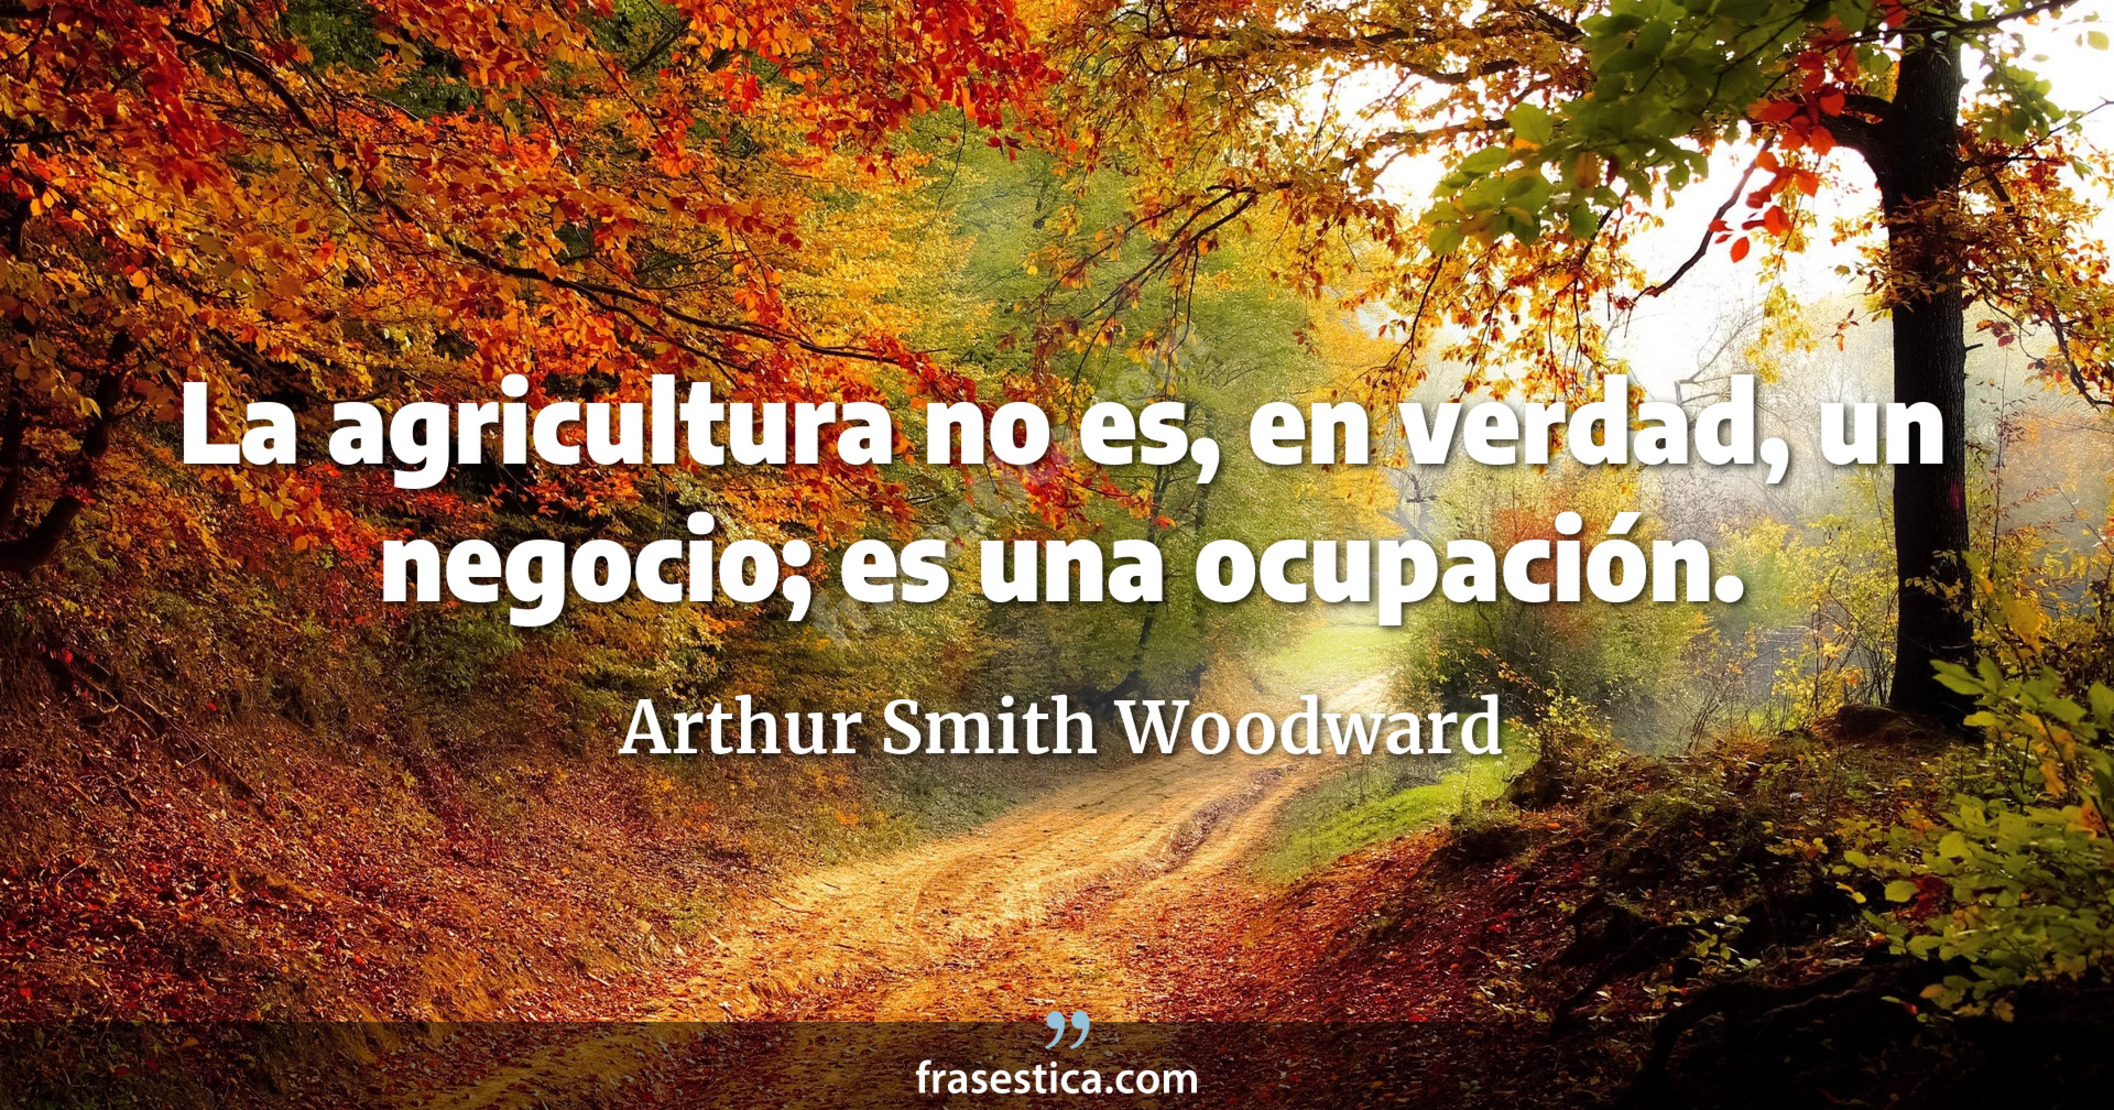 La agricultura no es, en verdad, un negocio; es una ocupación. - Arthur Smith Woodward